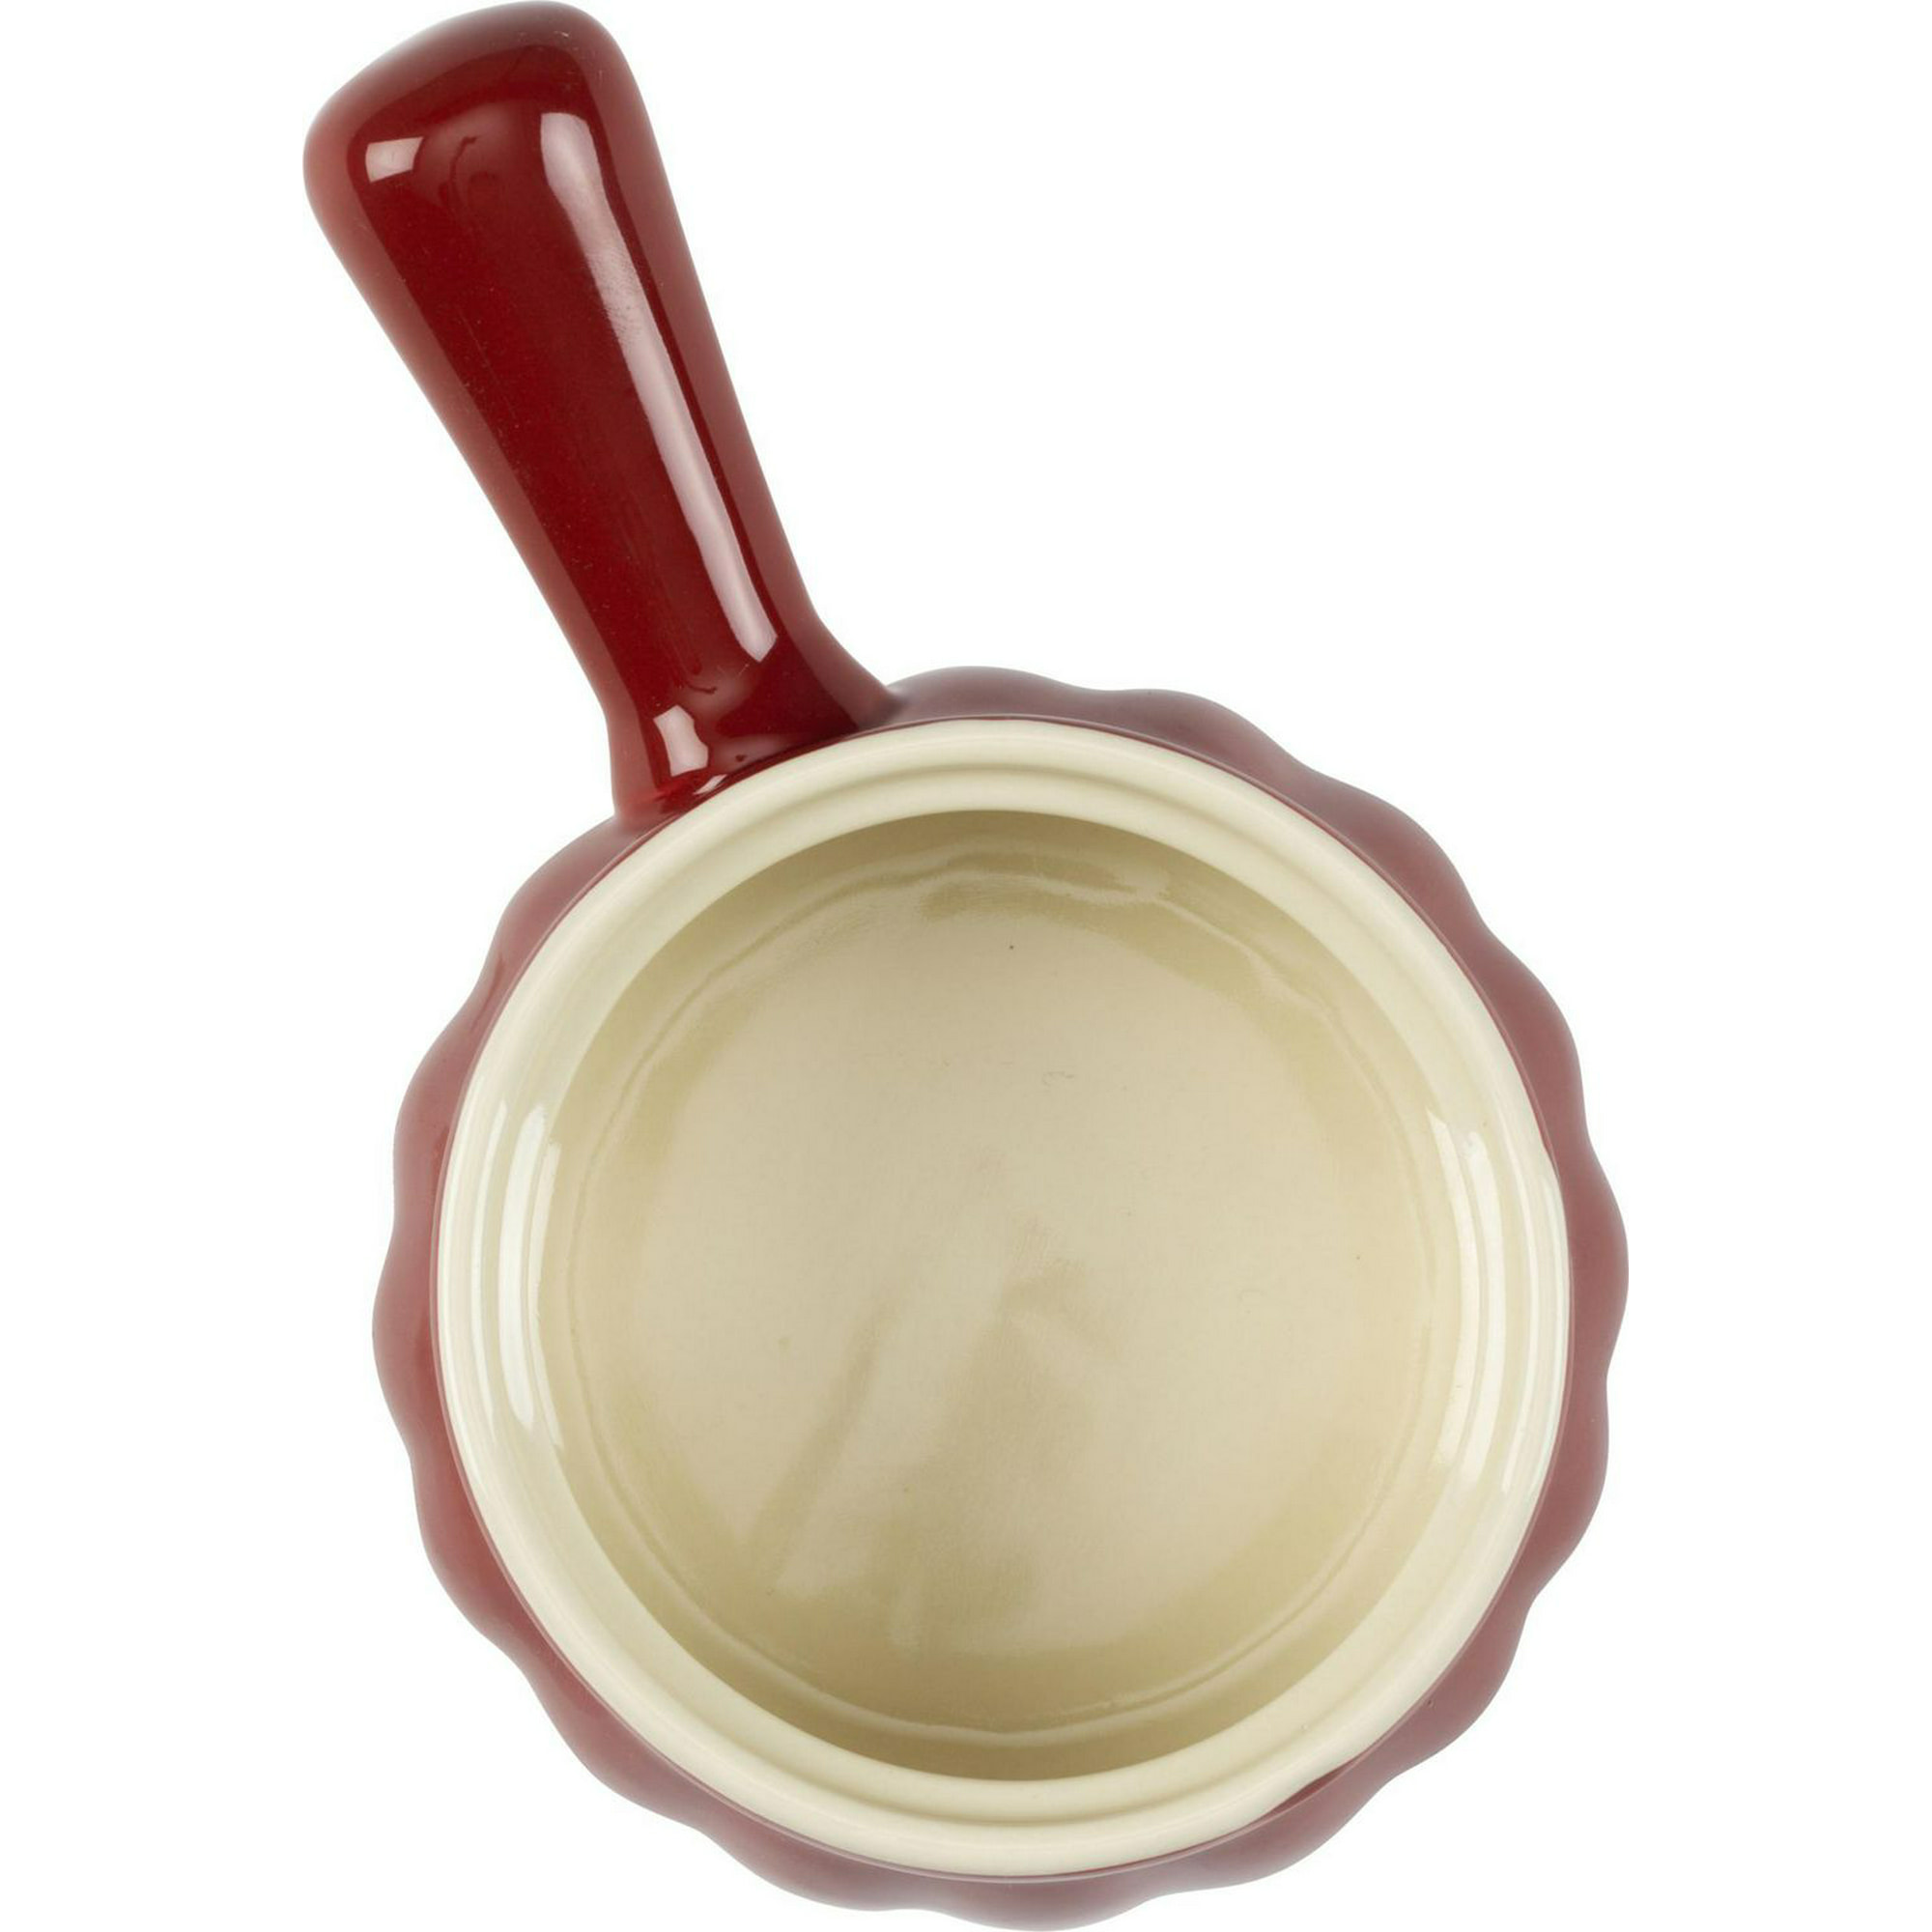 Lug Soup Bowl - Cerabon